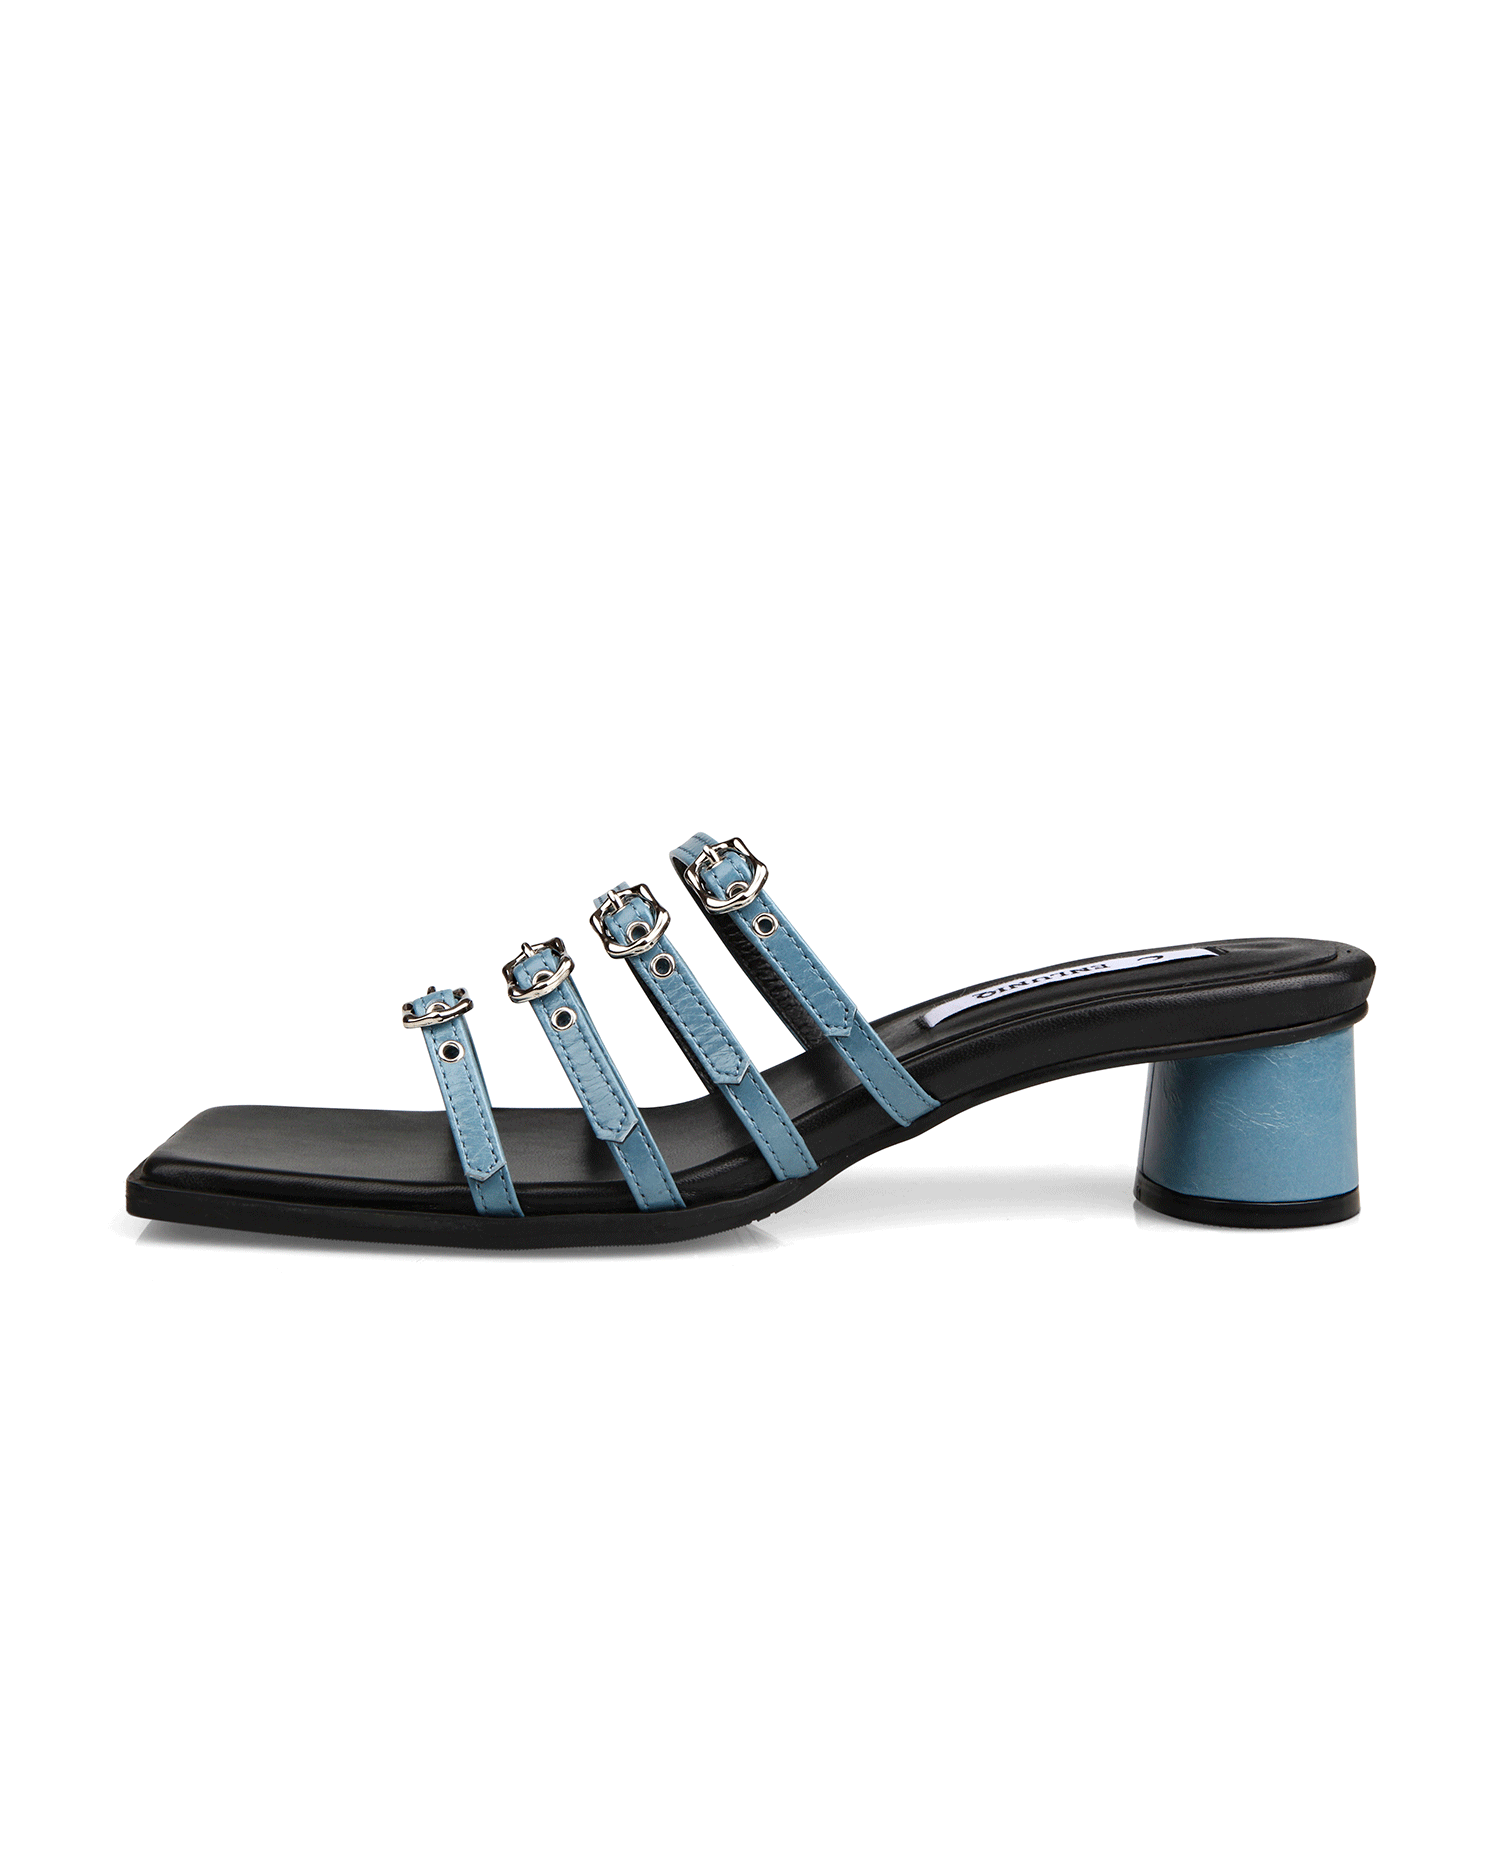 Mooi Sandals - Light Blue